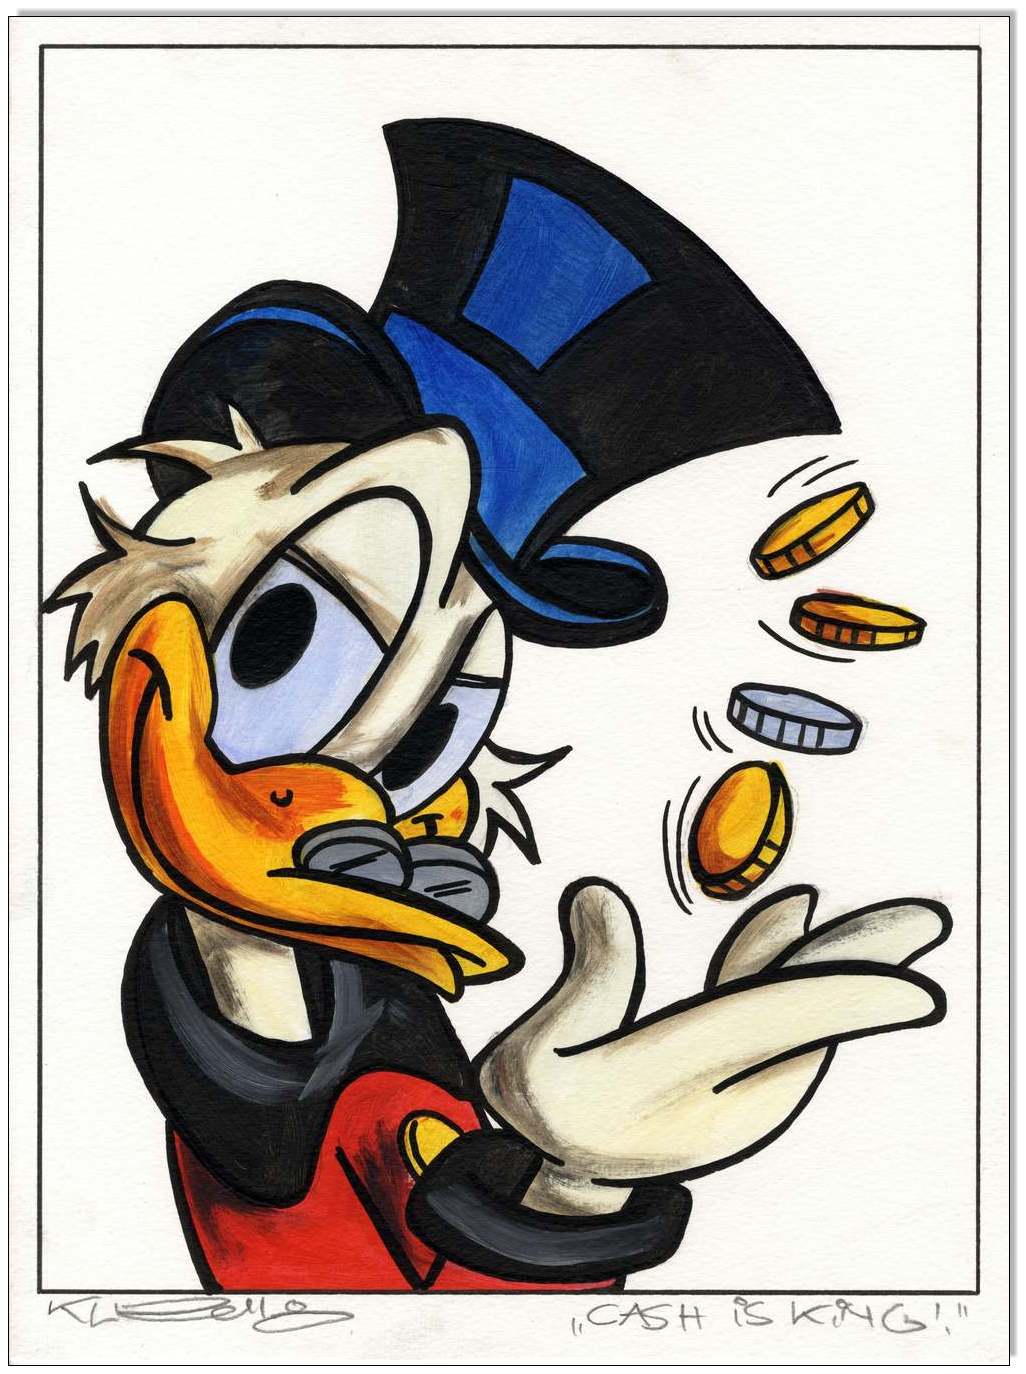 Dagobert Duck: Cash is king - 30 x 40 cm